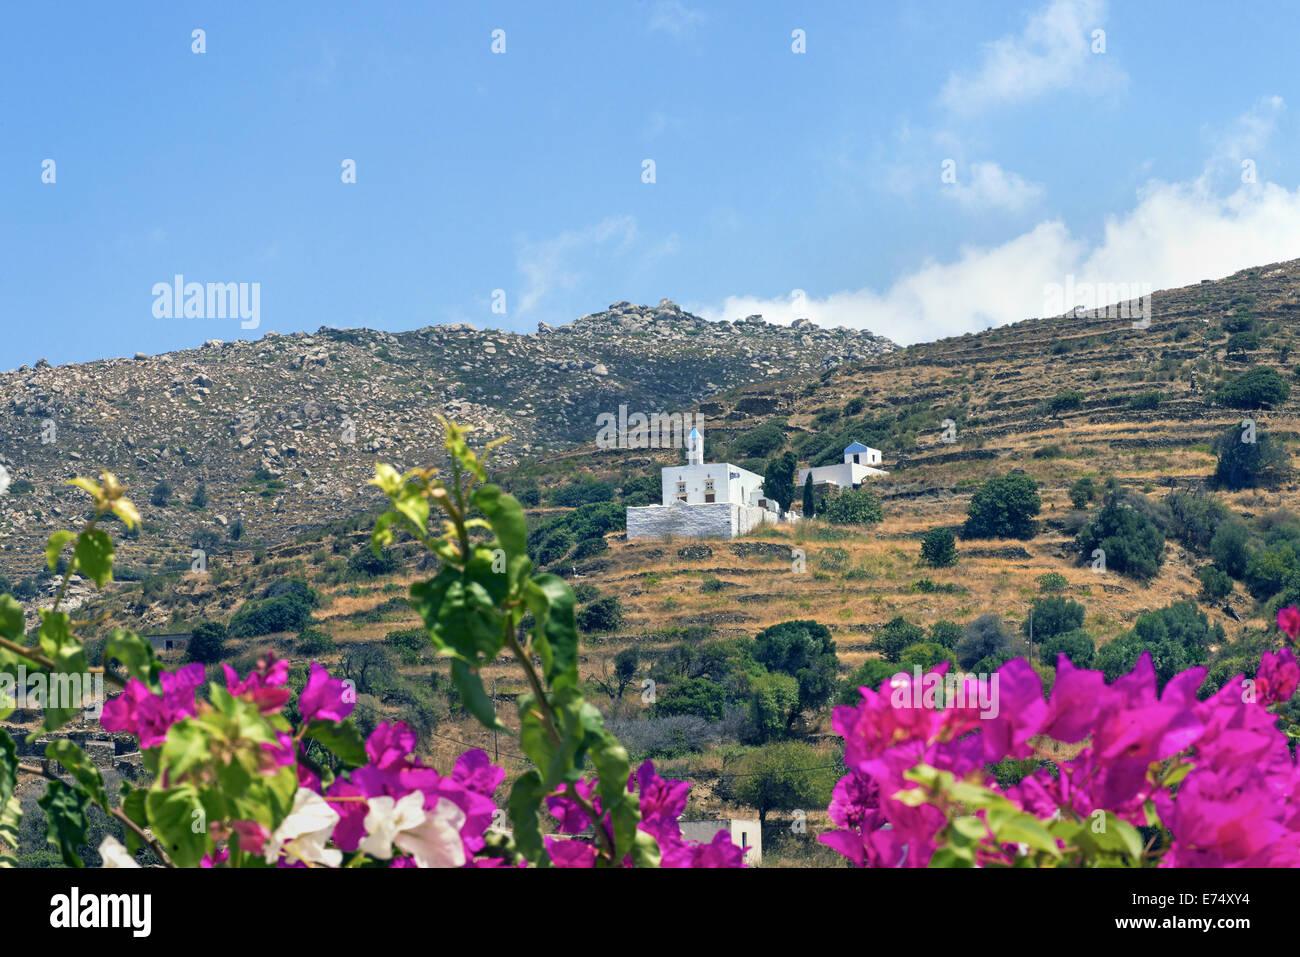 Bunte Ansicht von Agapi (Liebe in griechischer Sprache) traditionelles Dorf auf der Insel Tinos, Kykladen, Griechenland Stockfoto